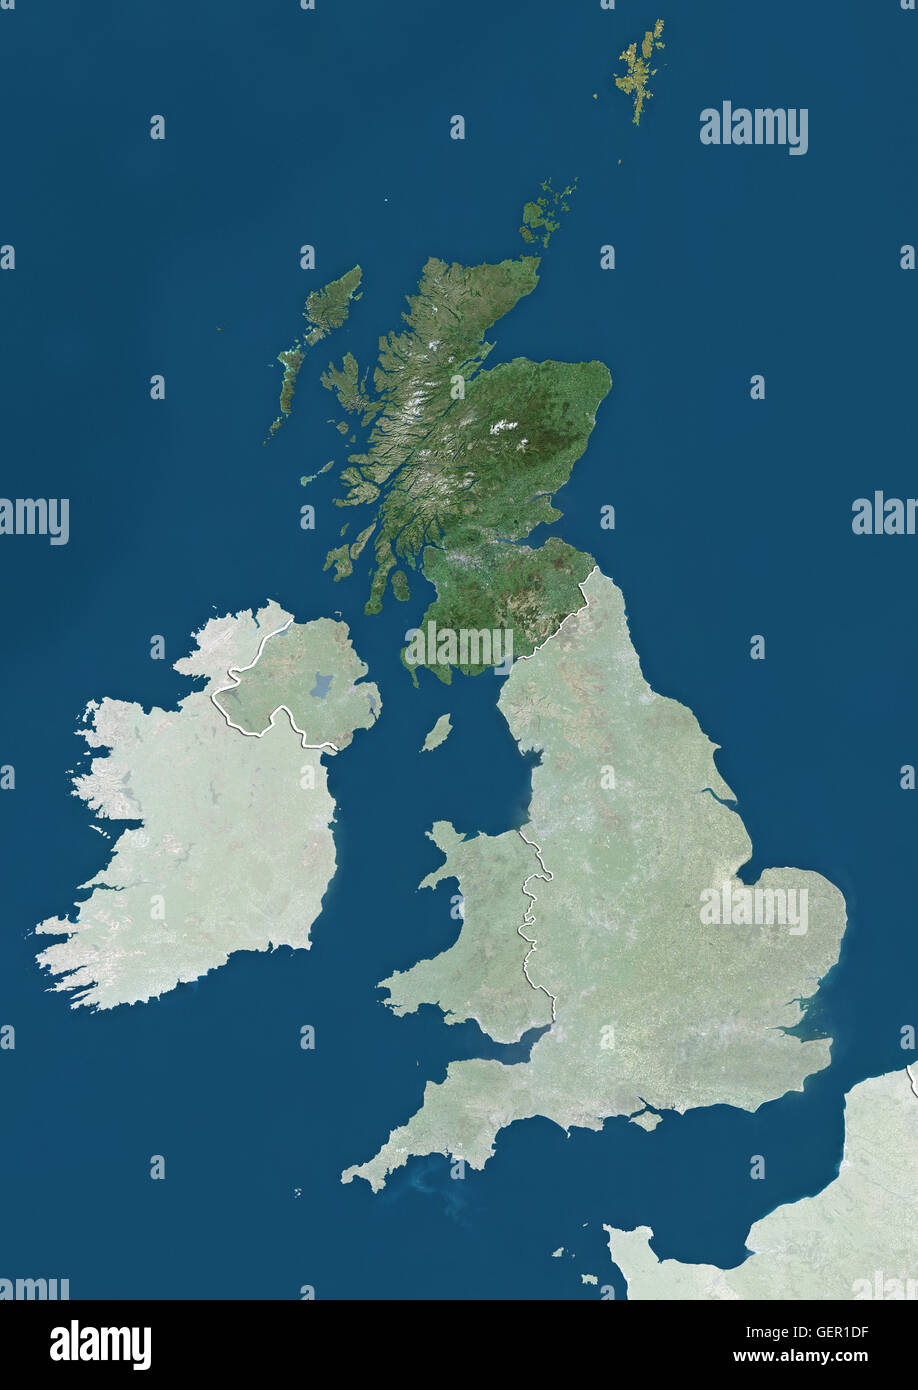 Vista satellitare della Scozia, Regno Unito (con confini tra paesi e maschera). L'immagine mette in evidenza la Scozia nel Regno Unito. Questa immagine è stata elaborata sulla base dei dati acquisiti dai satelliti Landsat. Foto Stock